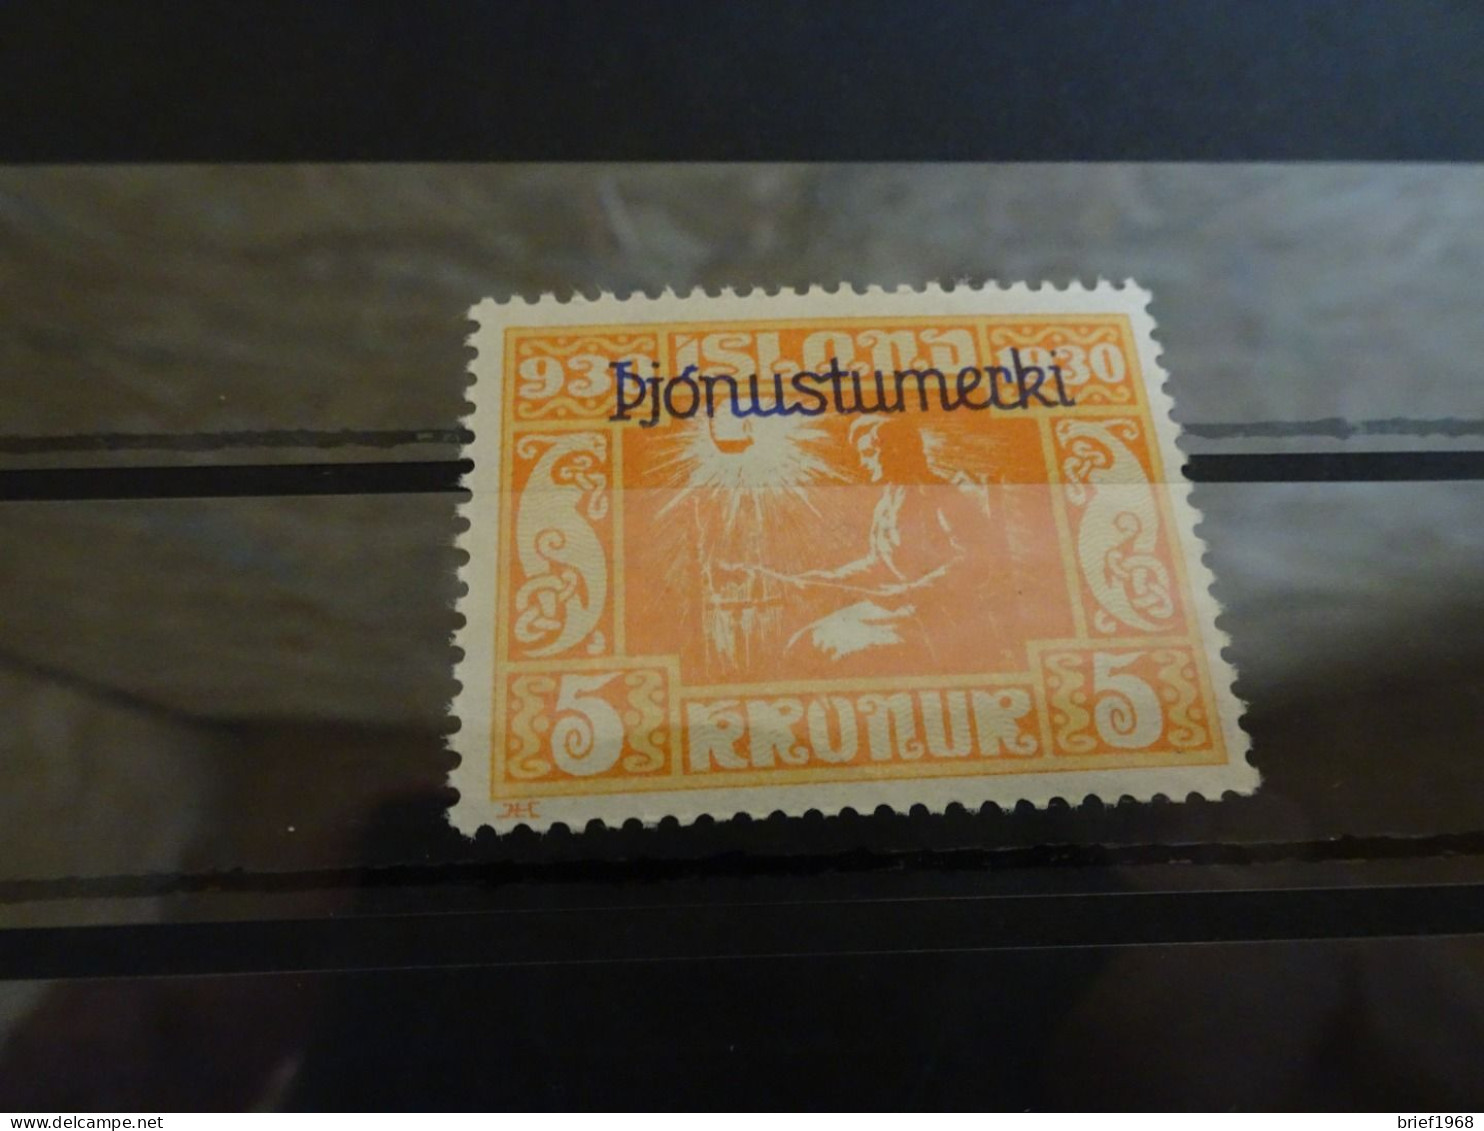 Island Dienst Michel 57 Postfrisch (18169) - Dienstmarken